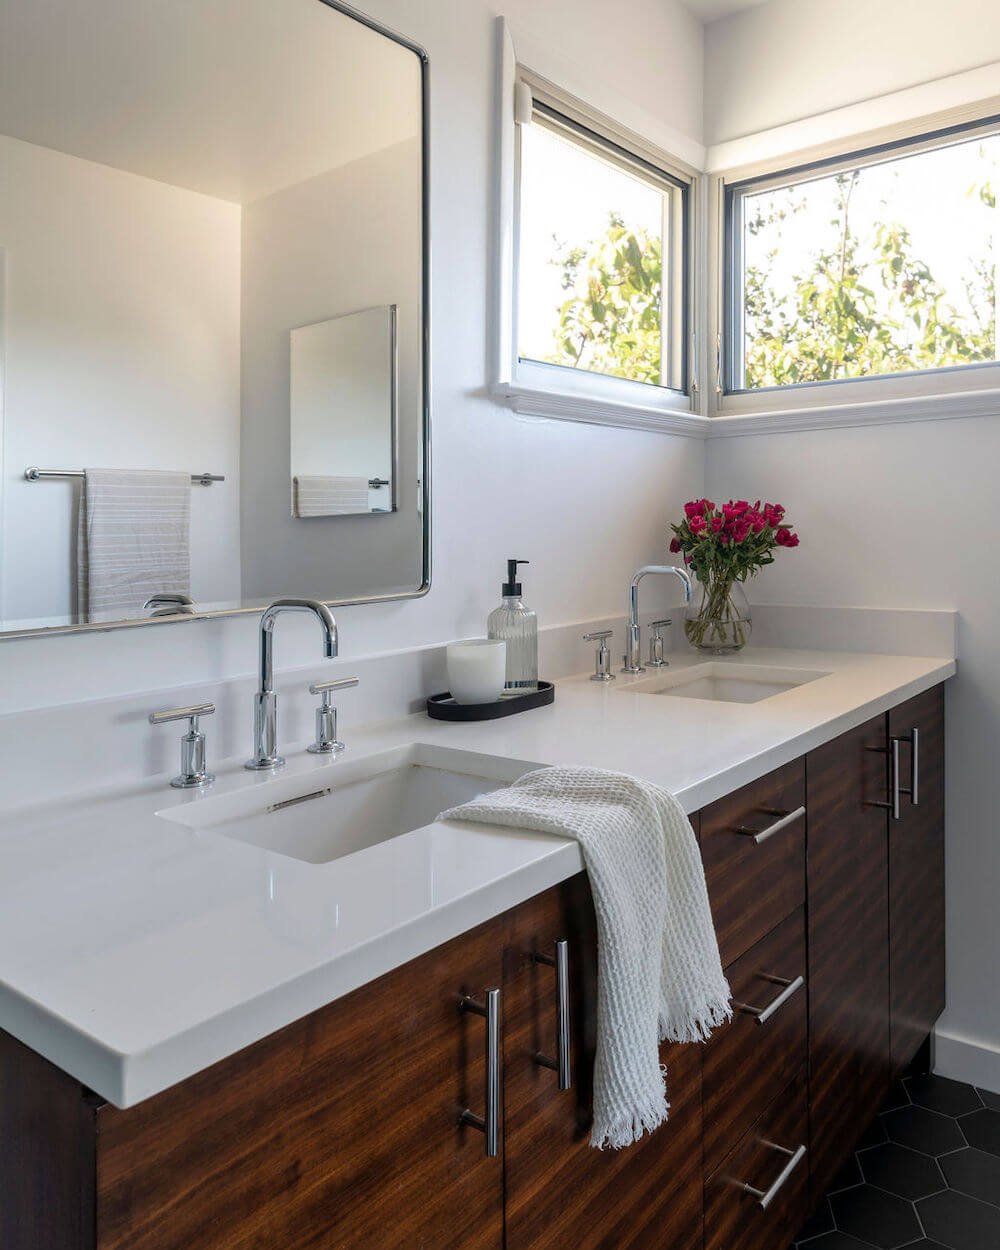 Sequoyah Oakland Bathroom Remodel - Bathroom Vanity 3.jpg